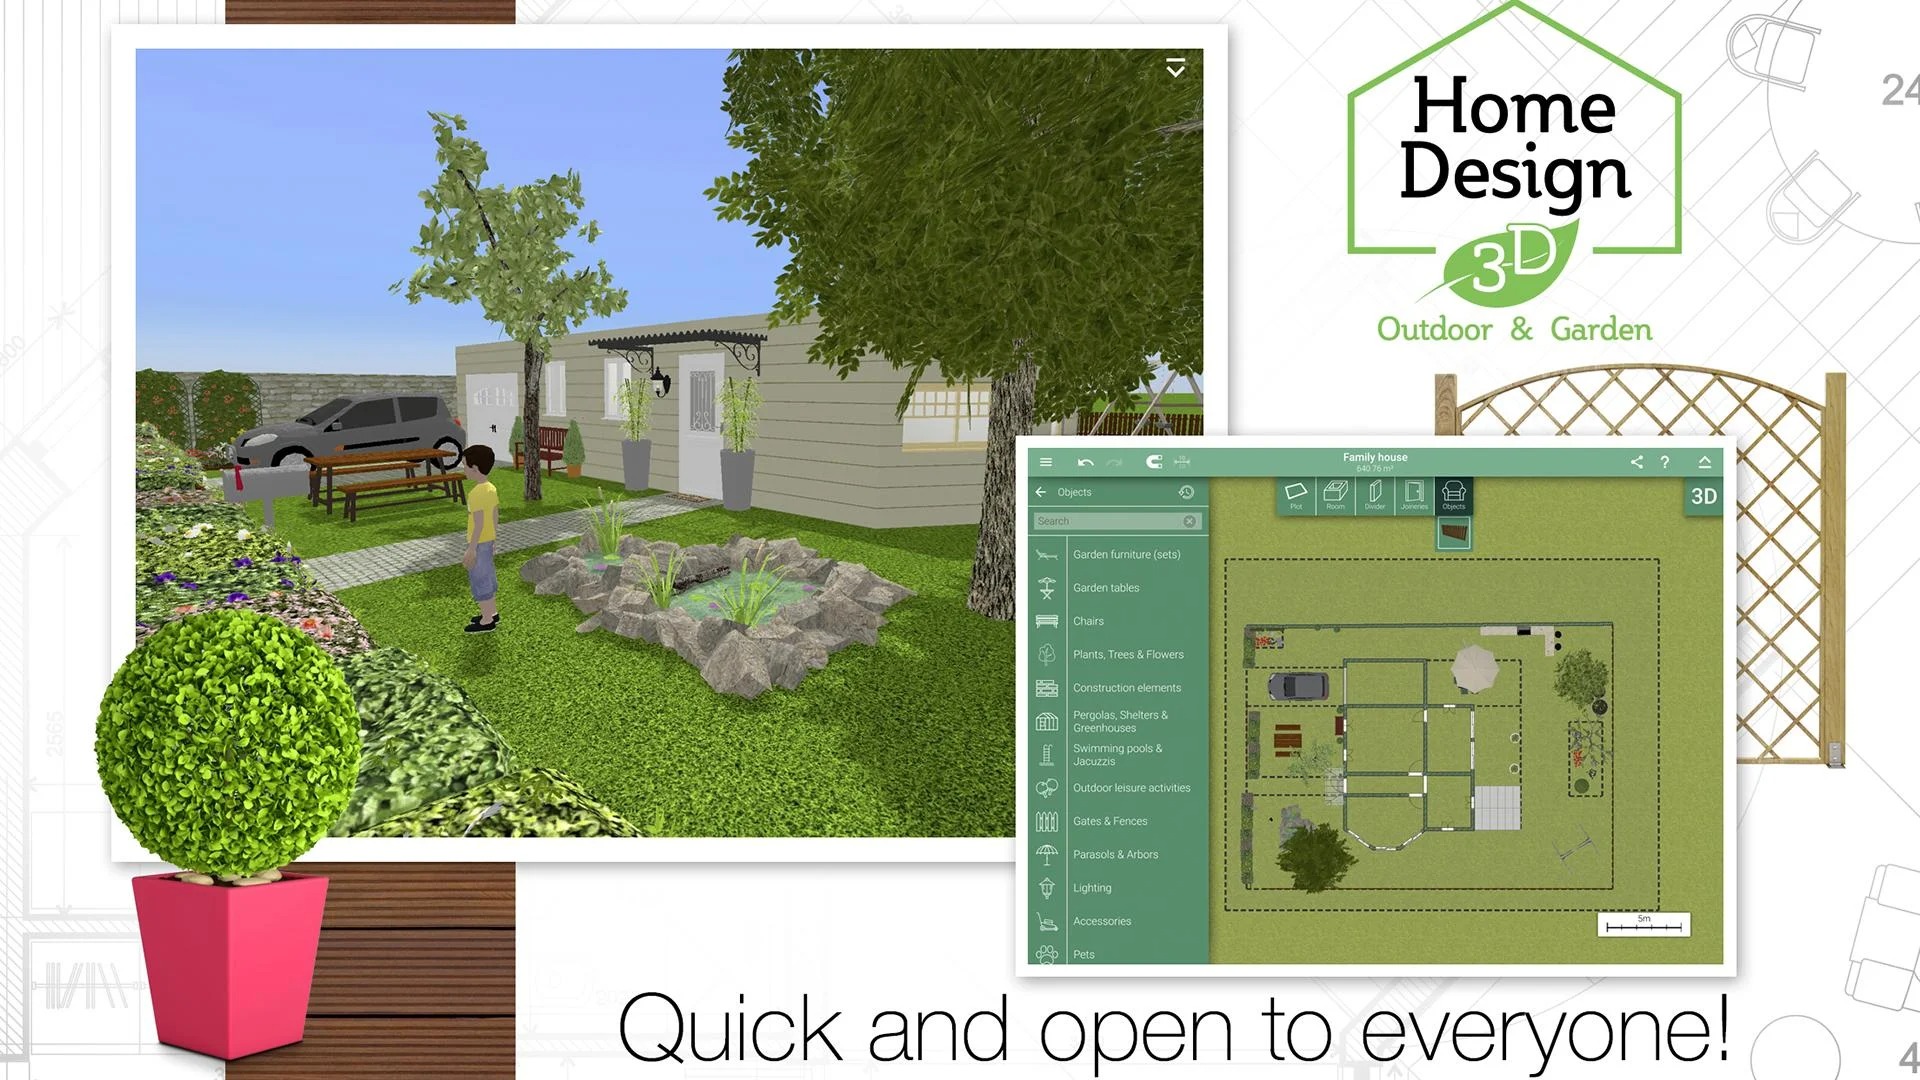 Home Design 3D Outdoor/Garden
1